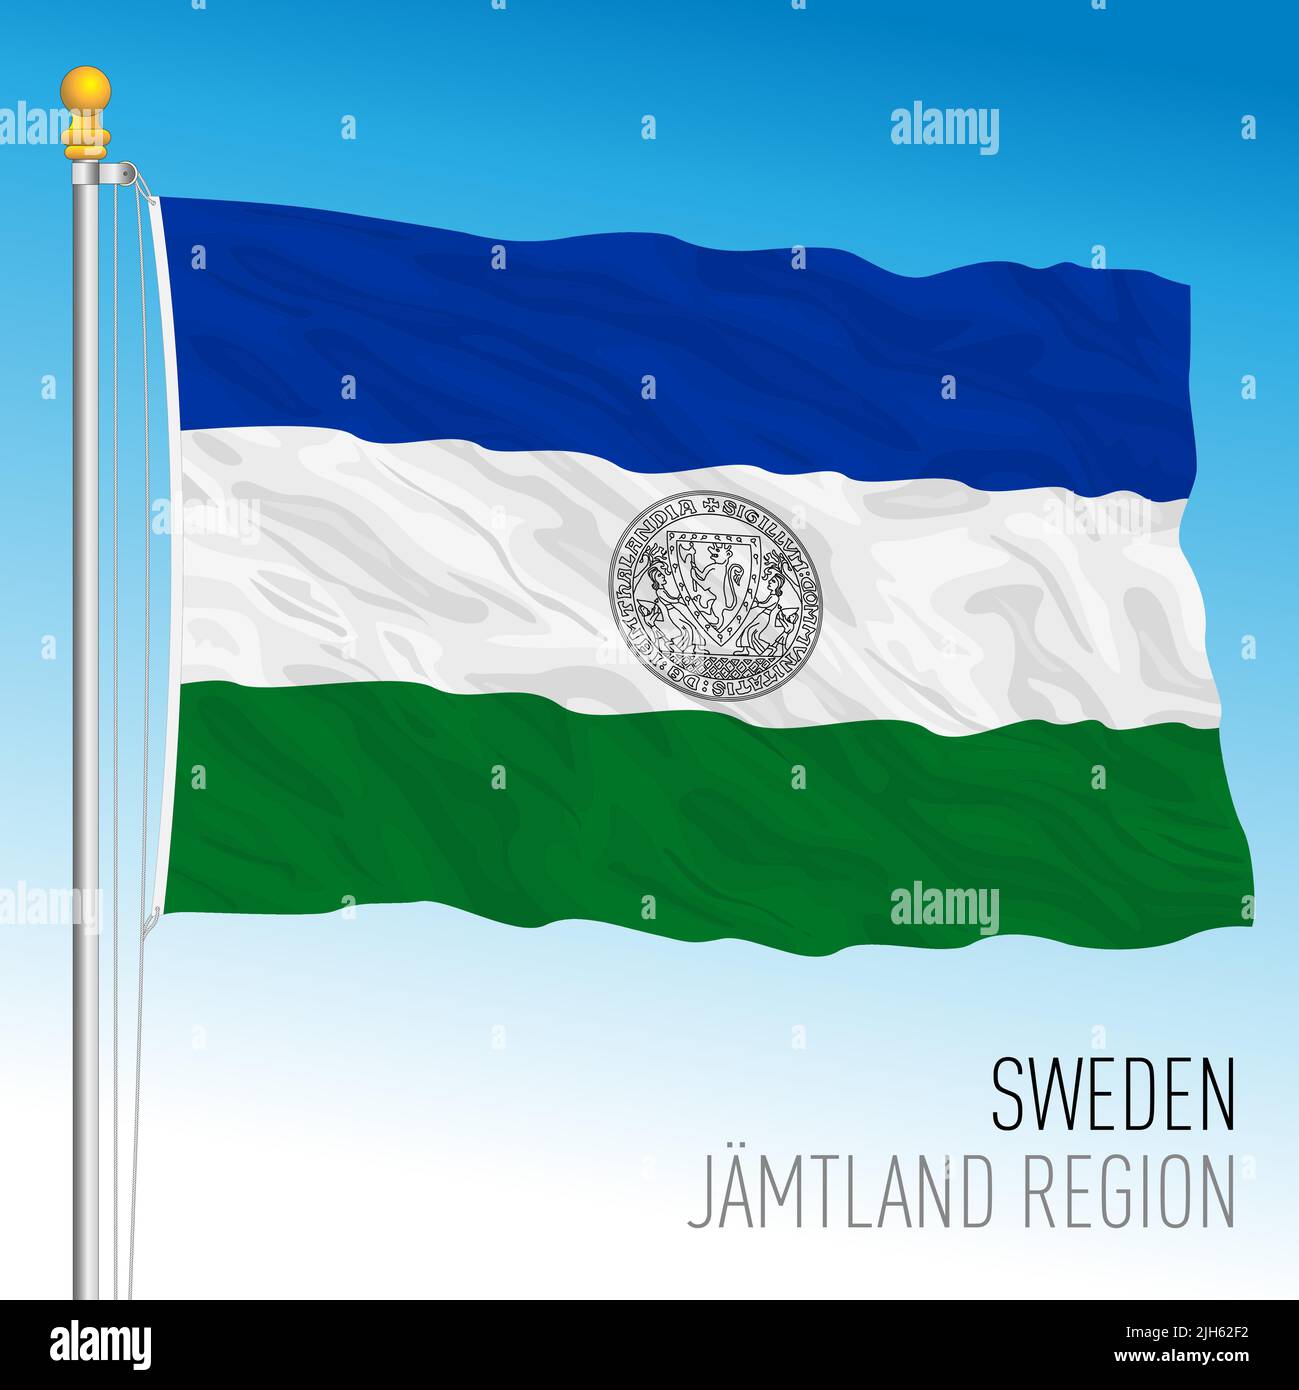 Bandera regional de Jamtland, Reino de Suecia, ilustración de vectores Ilustración del Vector